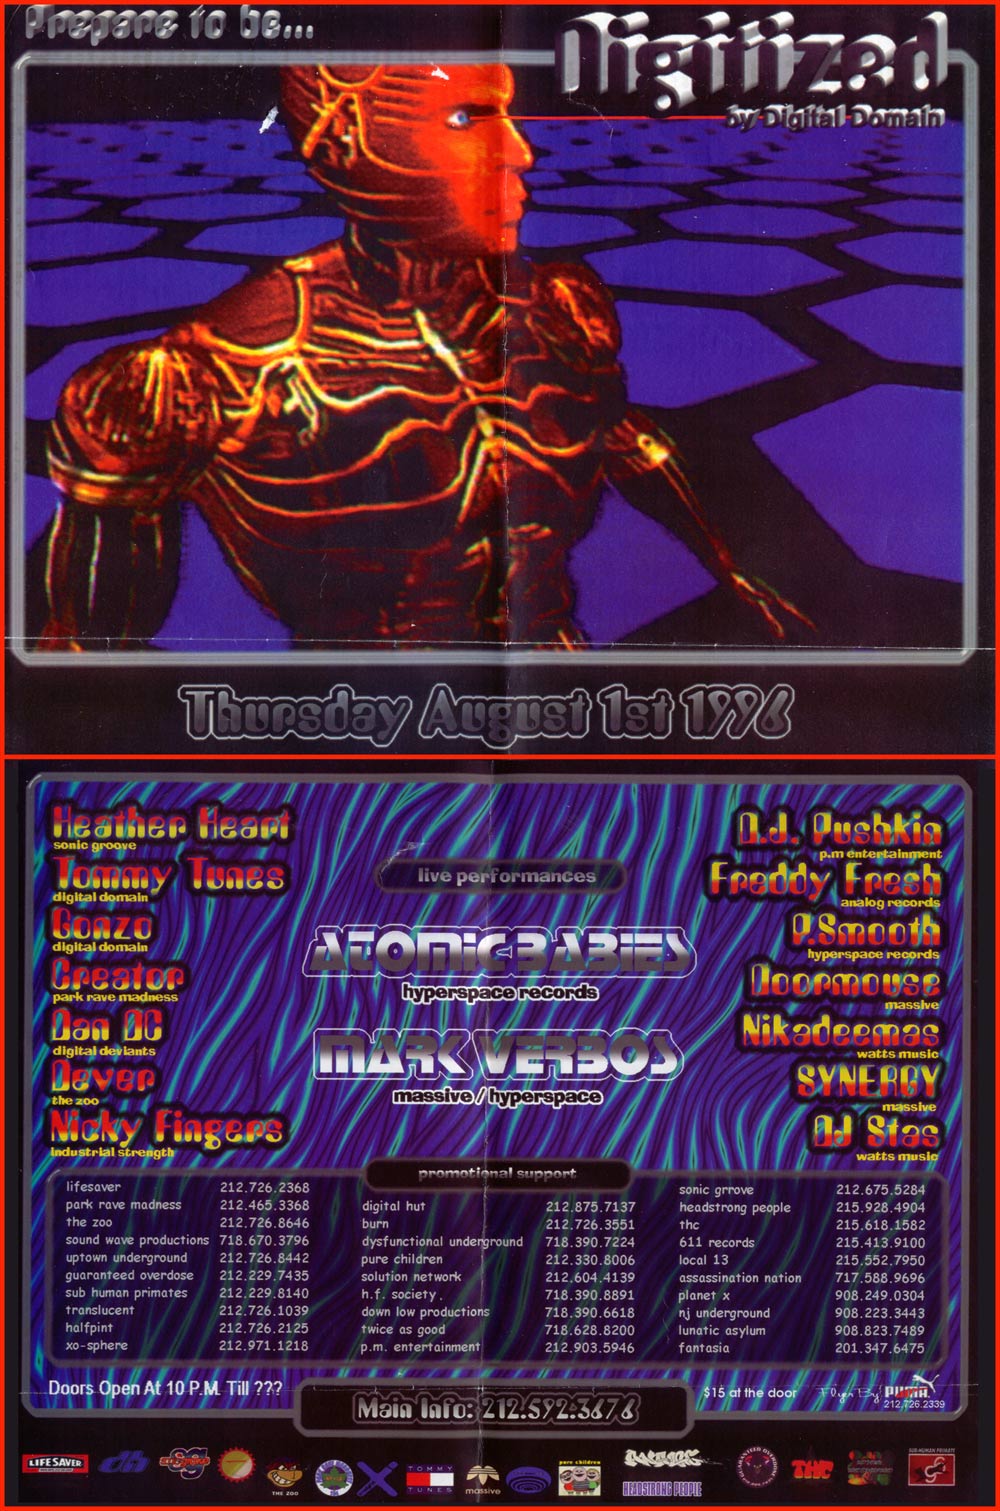 1996-08-01-Rave-flyer-brooklyn-nite-flite-club-Digitized - DJ